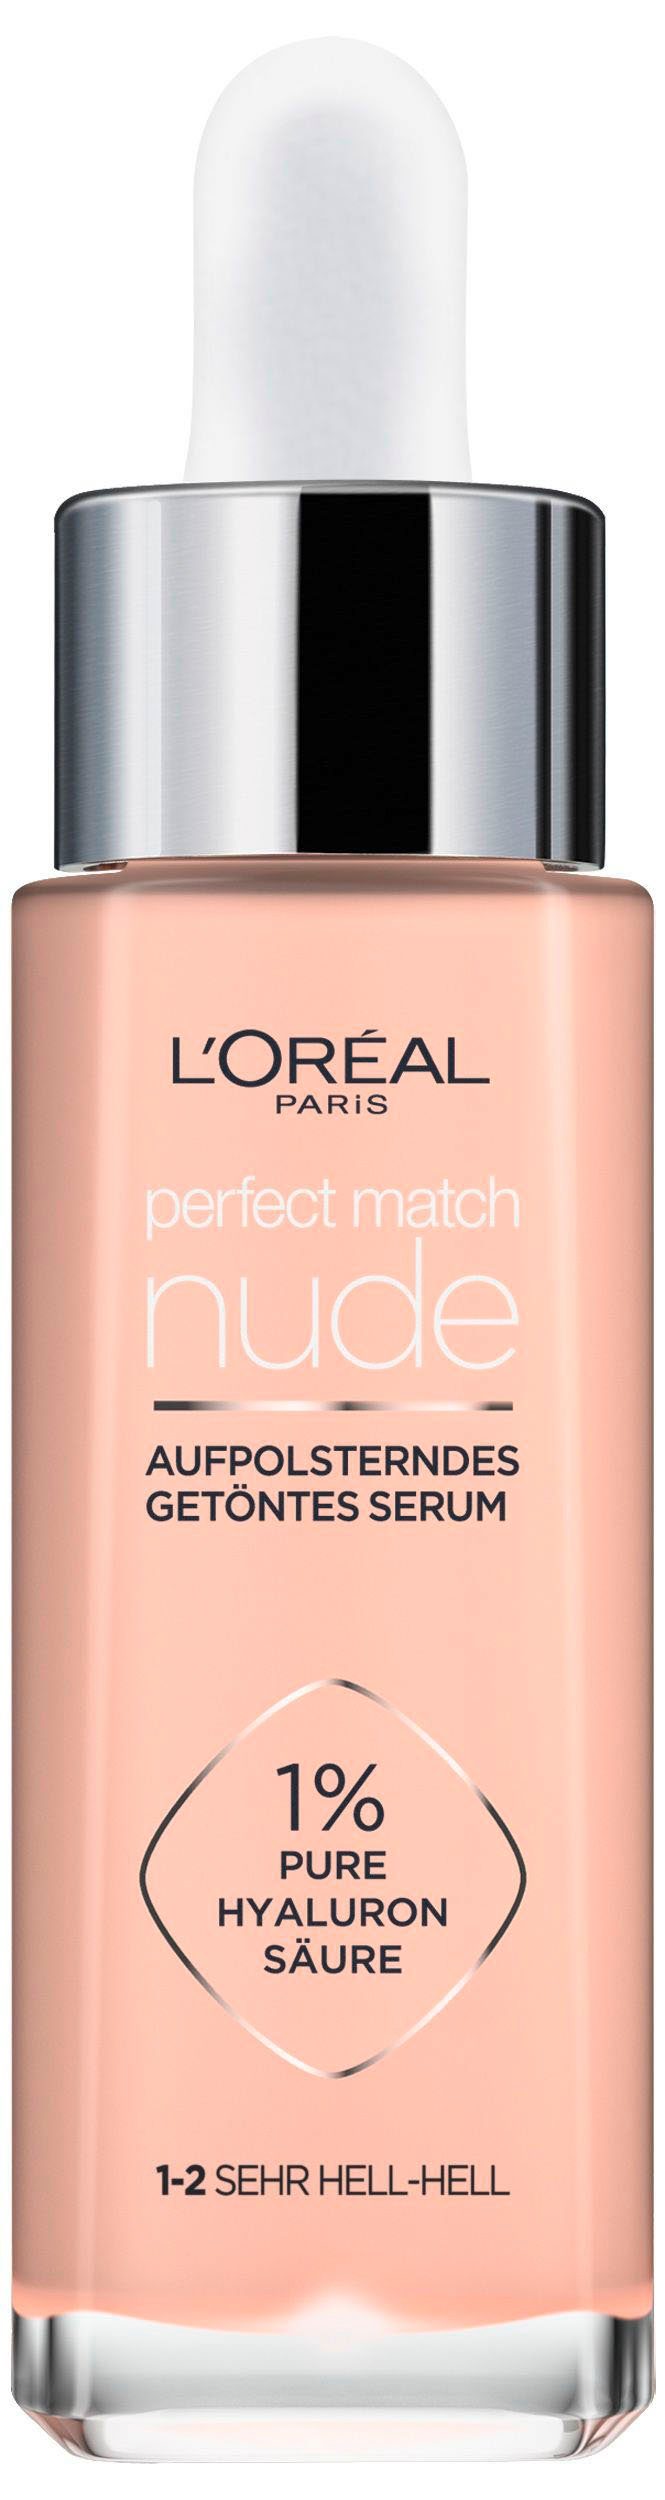 L'ORÉAL PARIS Gesichtsserum L'Oréal Paris Hyaloron Getöntes mit Perfect Serum, Match